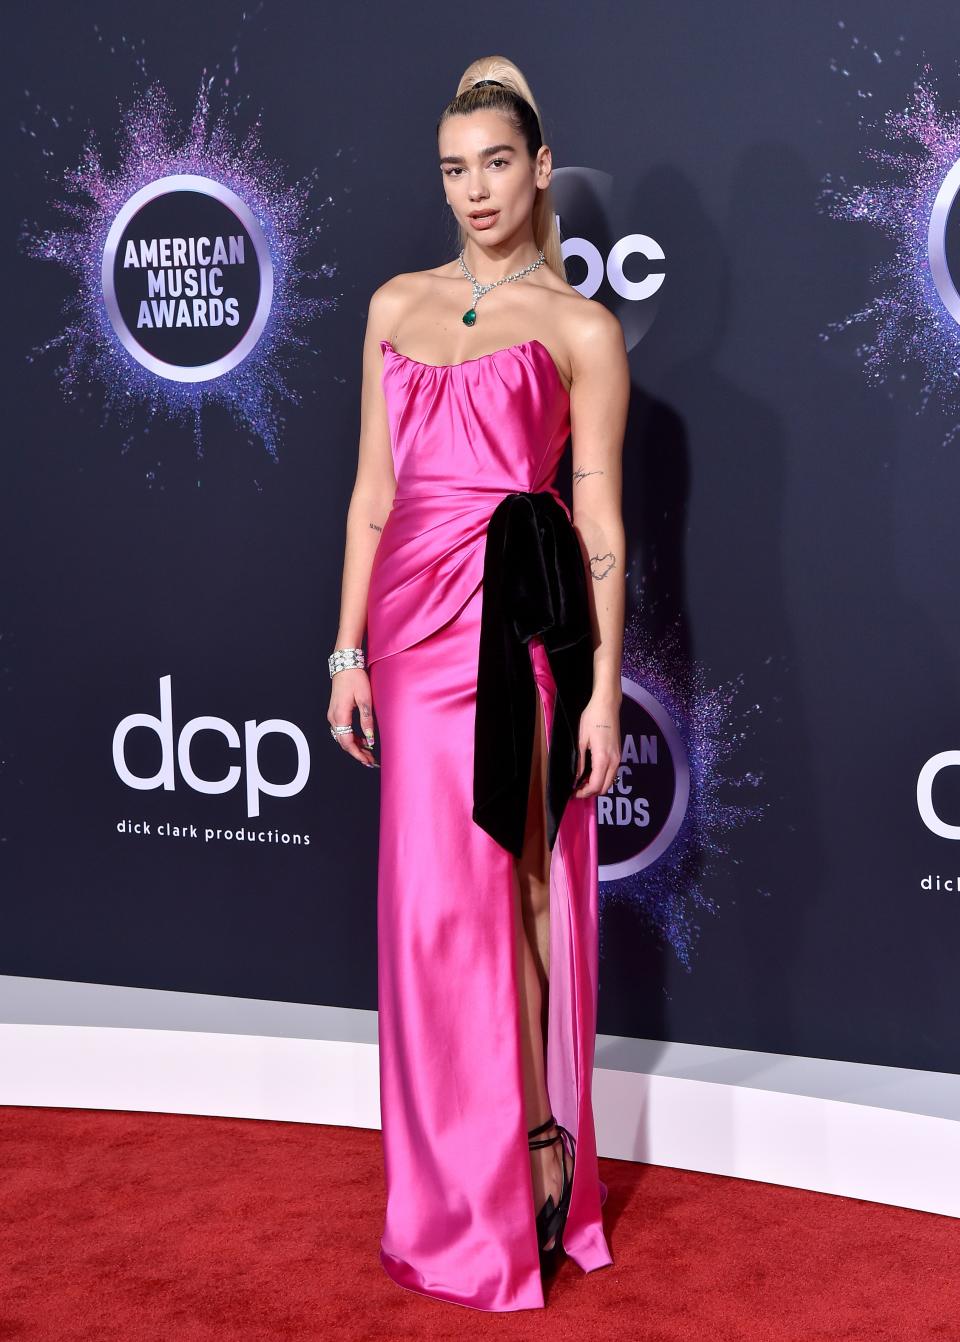 Dua Lipa in a Miu Miu dress at the American Music Awards in 2019.